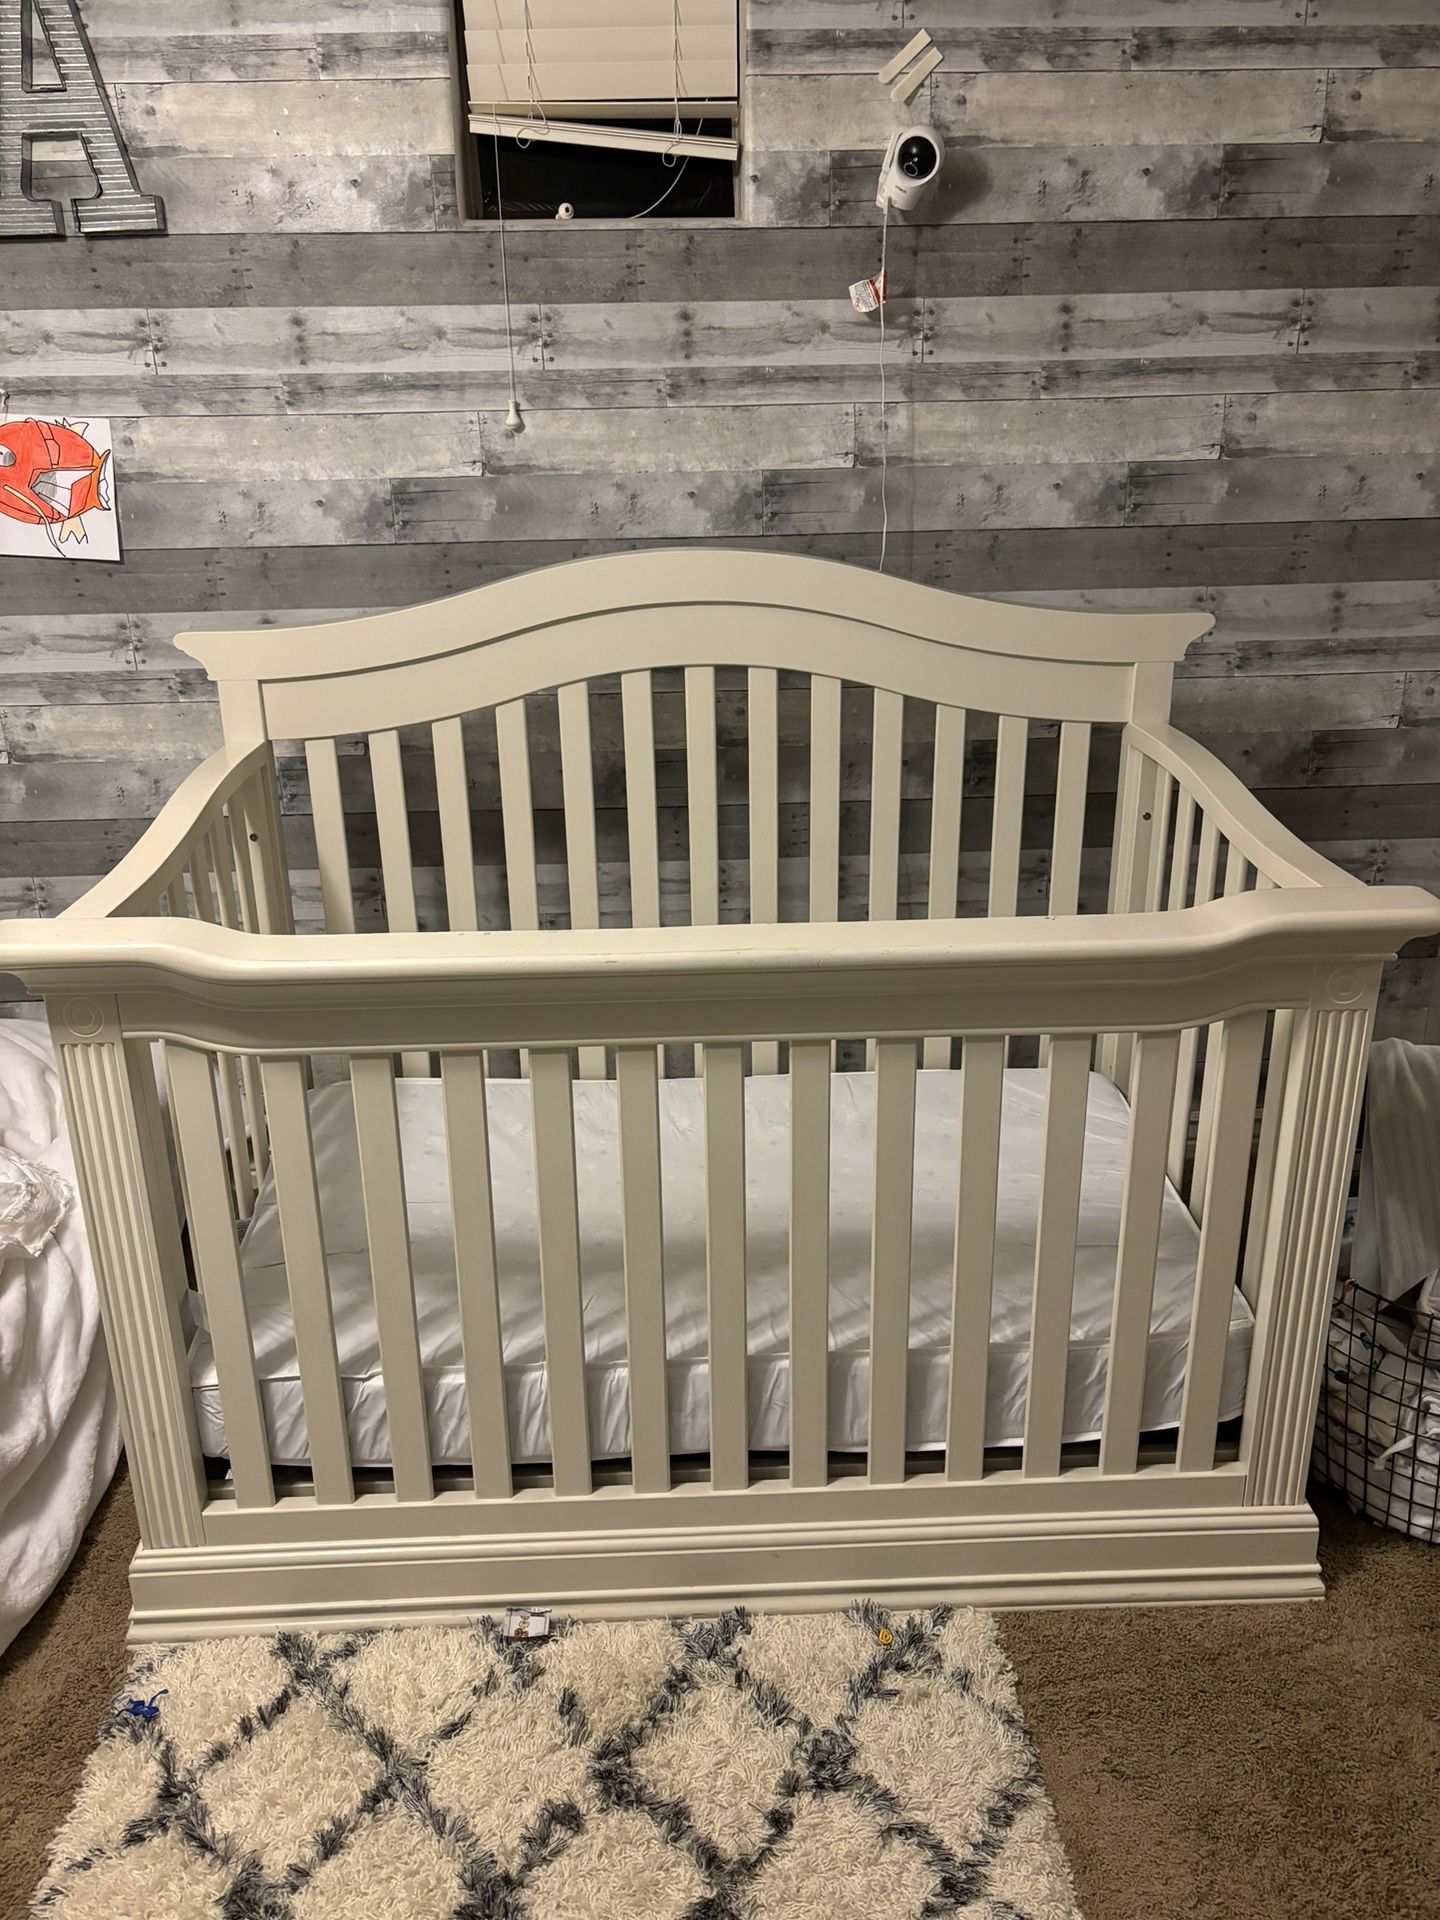 Baby Cache Crib 